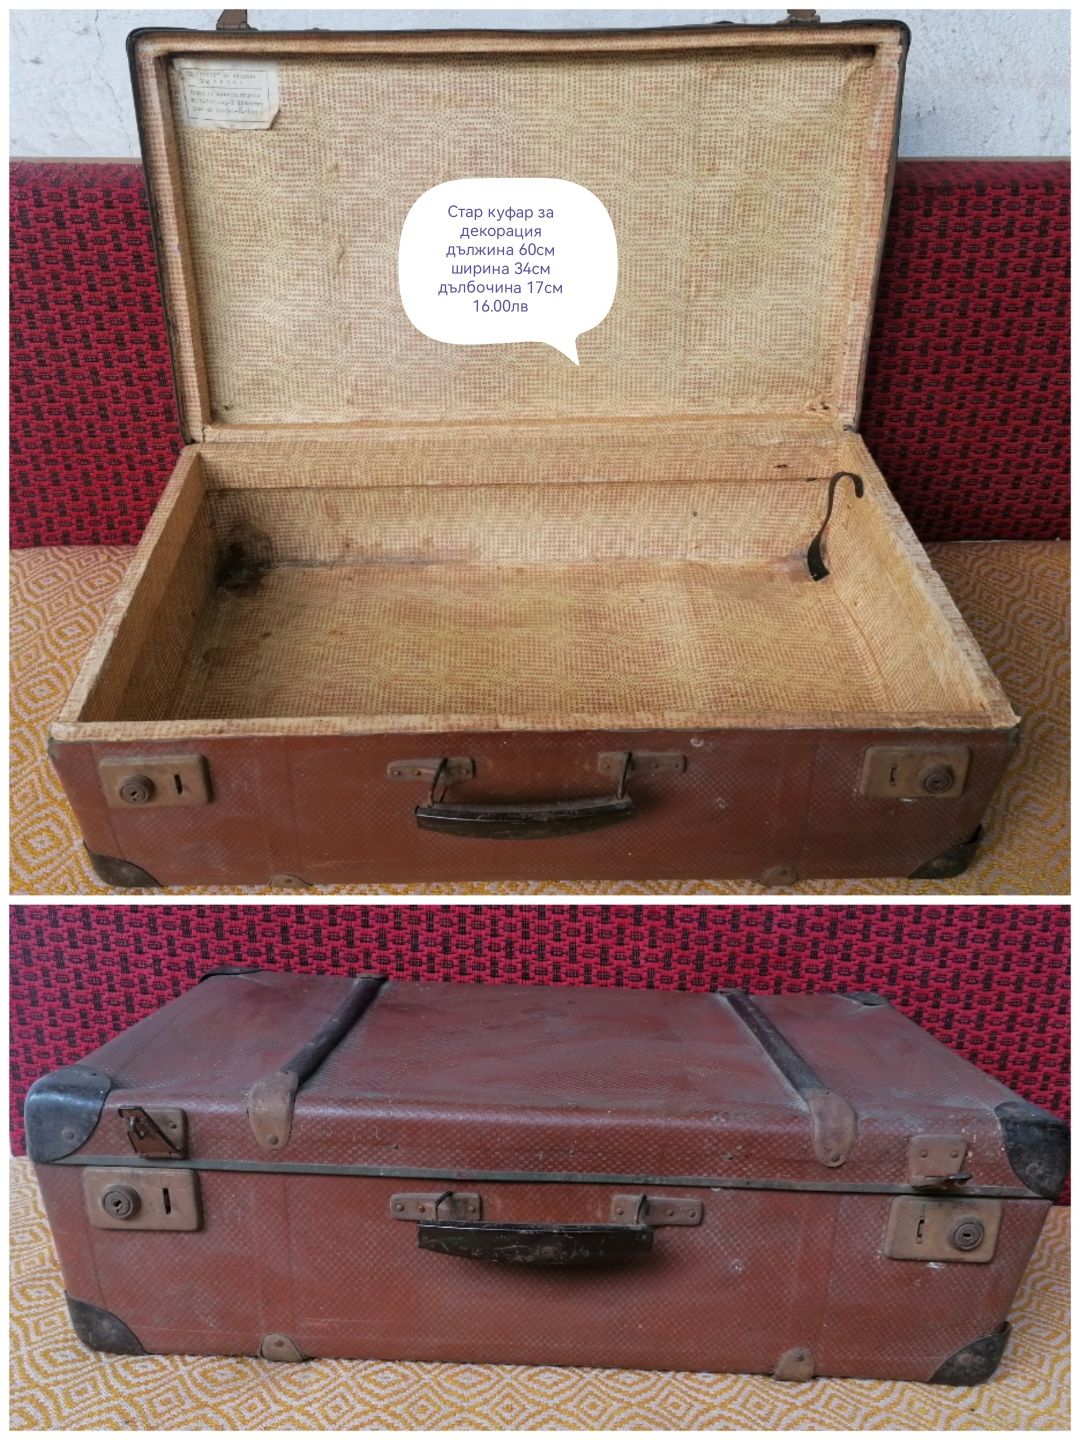 Стари куфари за декорация